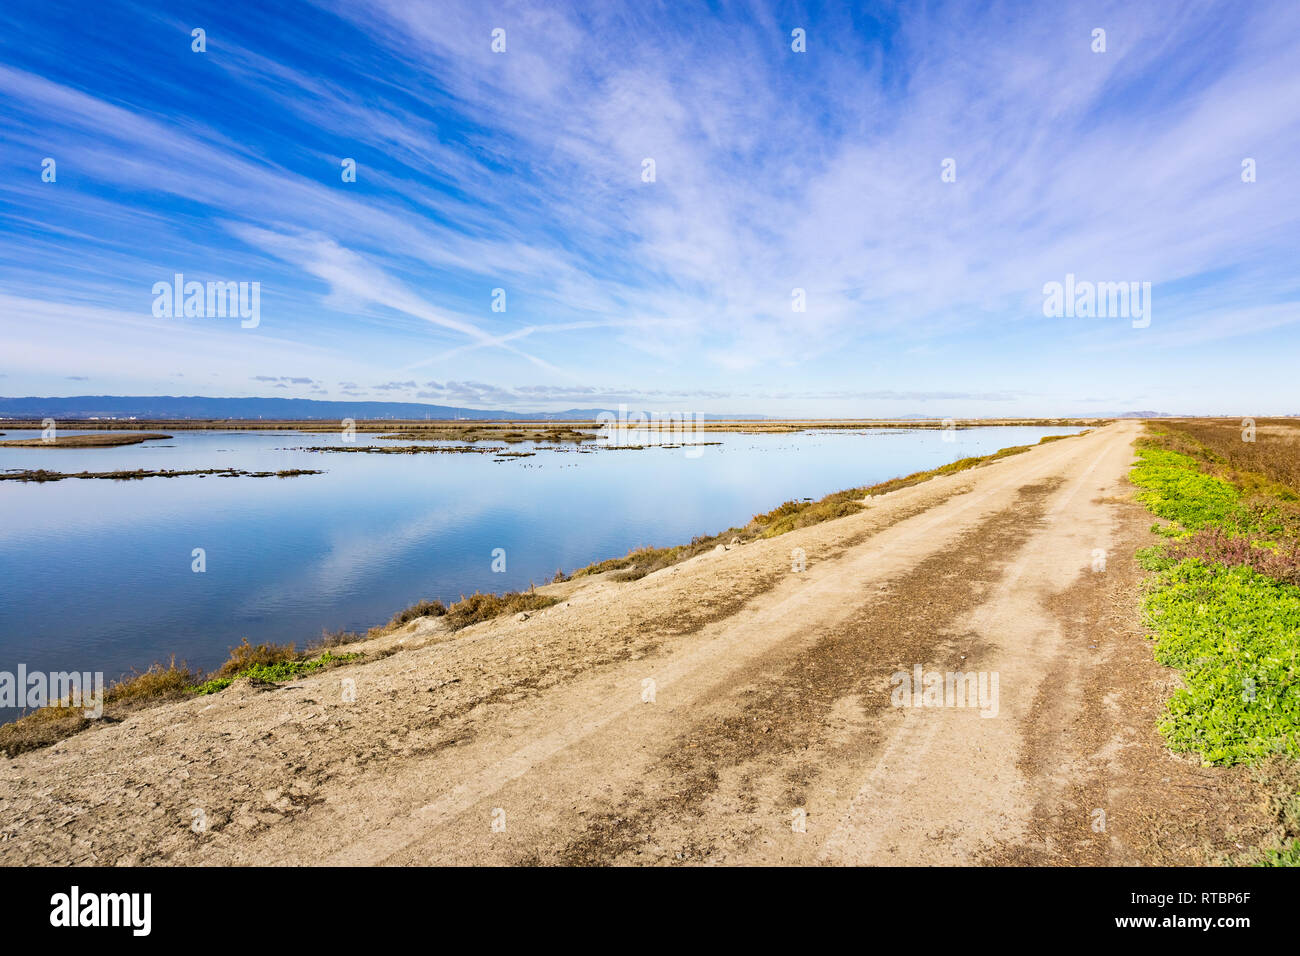 Levee in Alviso marsh, south San Francisco bay, San Jose, California Stock Photo